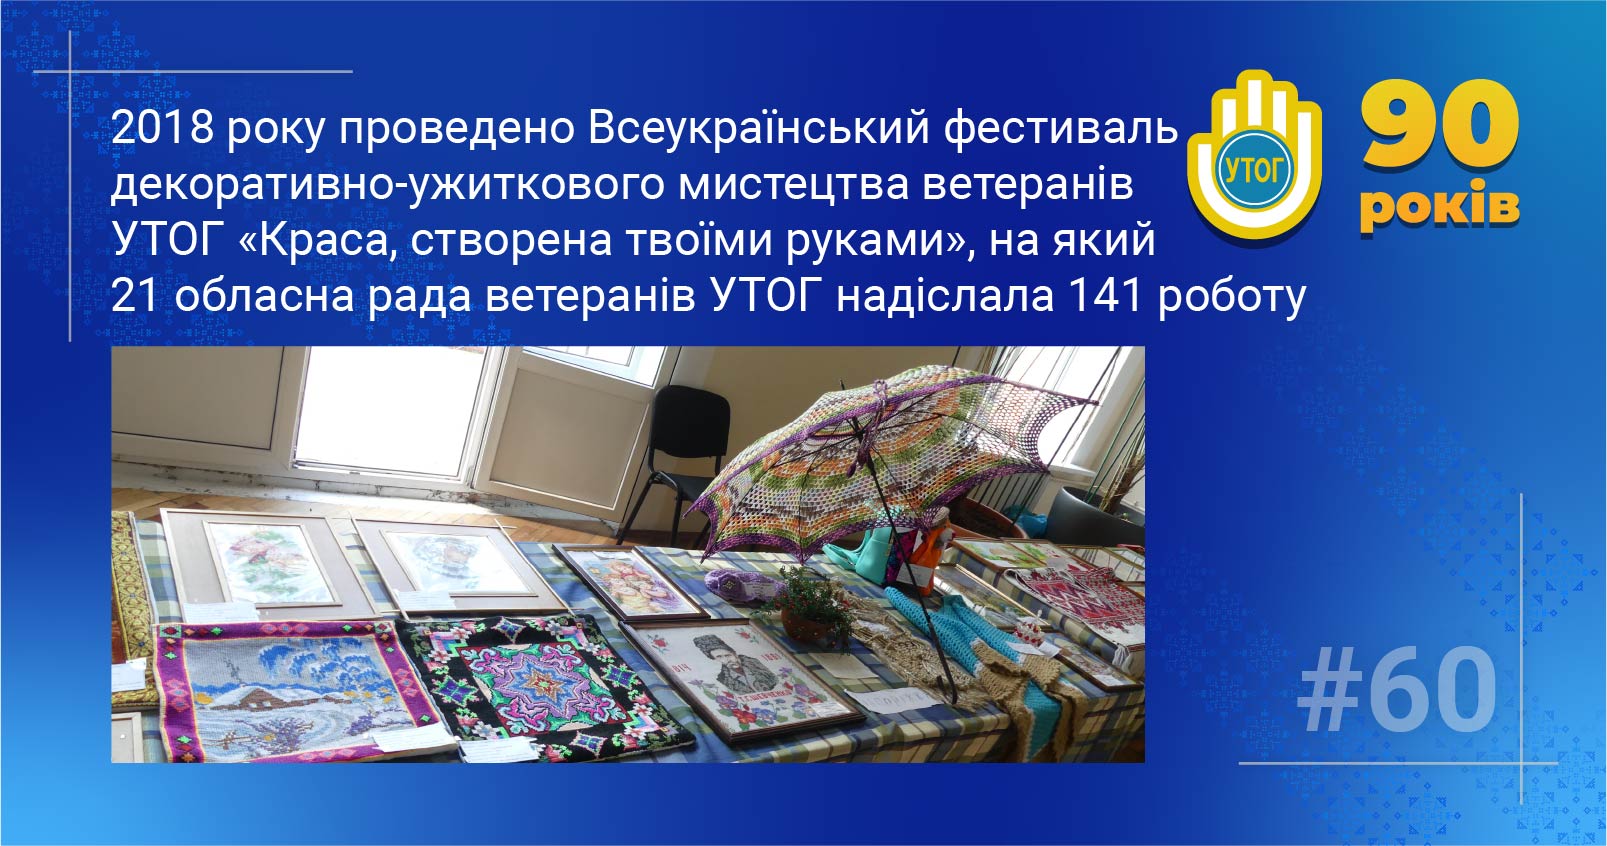 60. 2018 року проведено Всеукраїнський фестиваль декоративно-ужиткового мистецтва ветеранів УТОГ «Краса, створена твоїми руками», на який 21 обласна рада ветеранів УТОГ надіслала 141 роботу